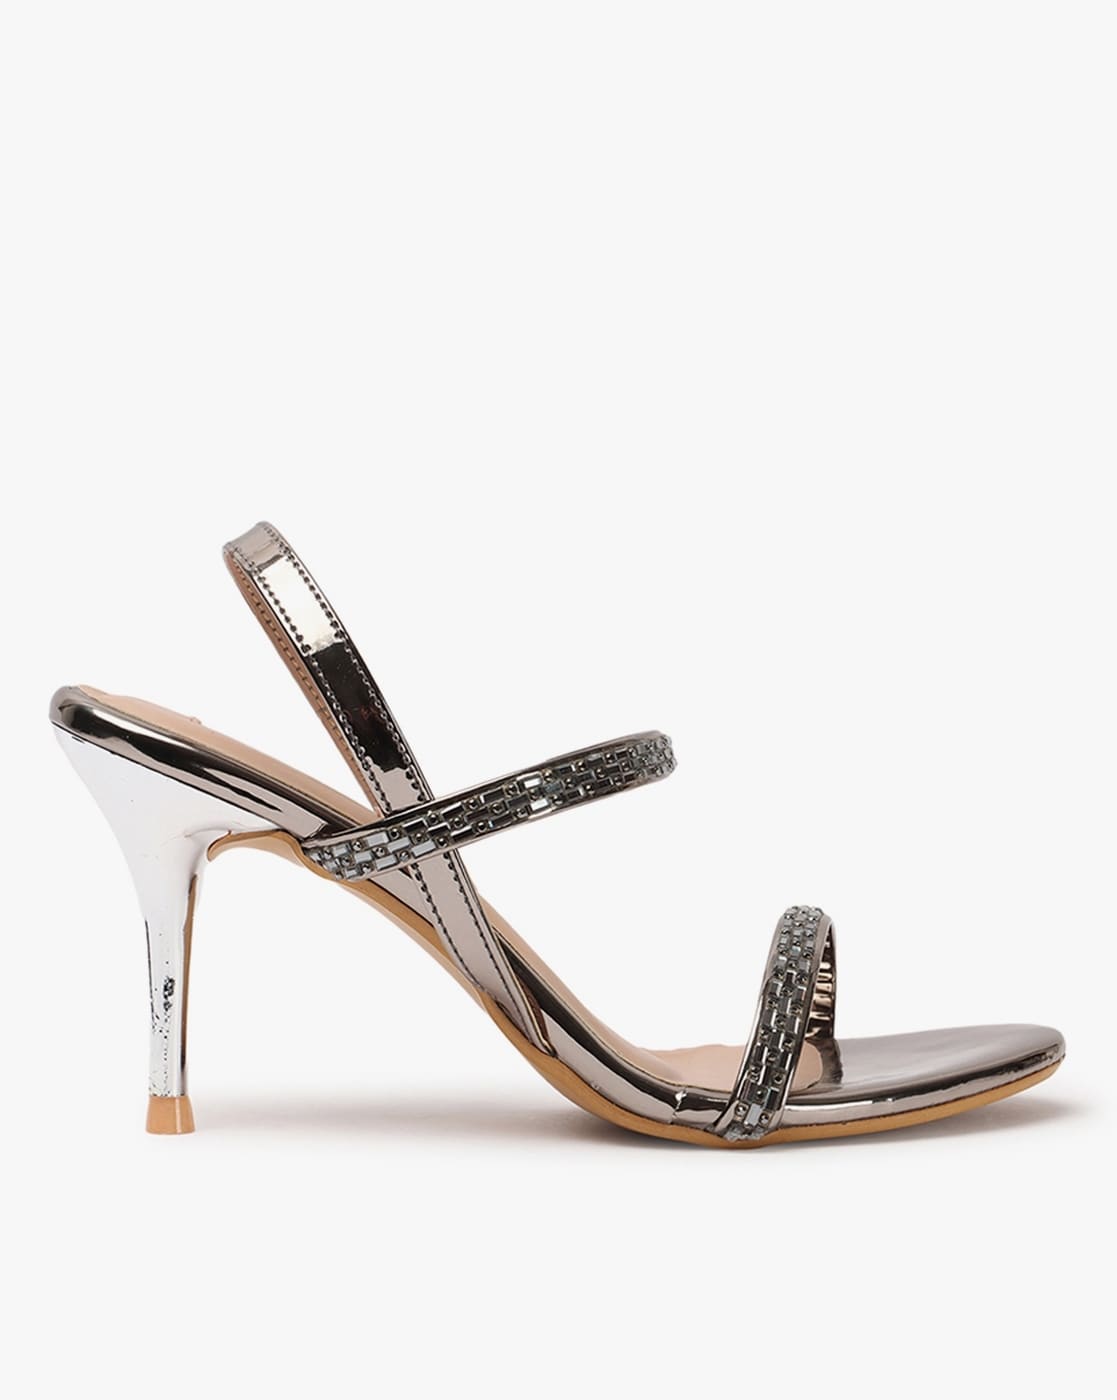 Ralph Lauren Holleen Dark Brown Braided Ankle Strap Heeled Sandals Size 5.5  | eBay